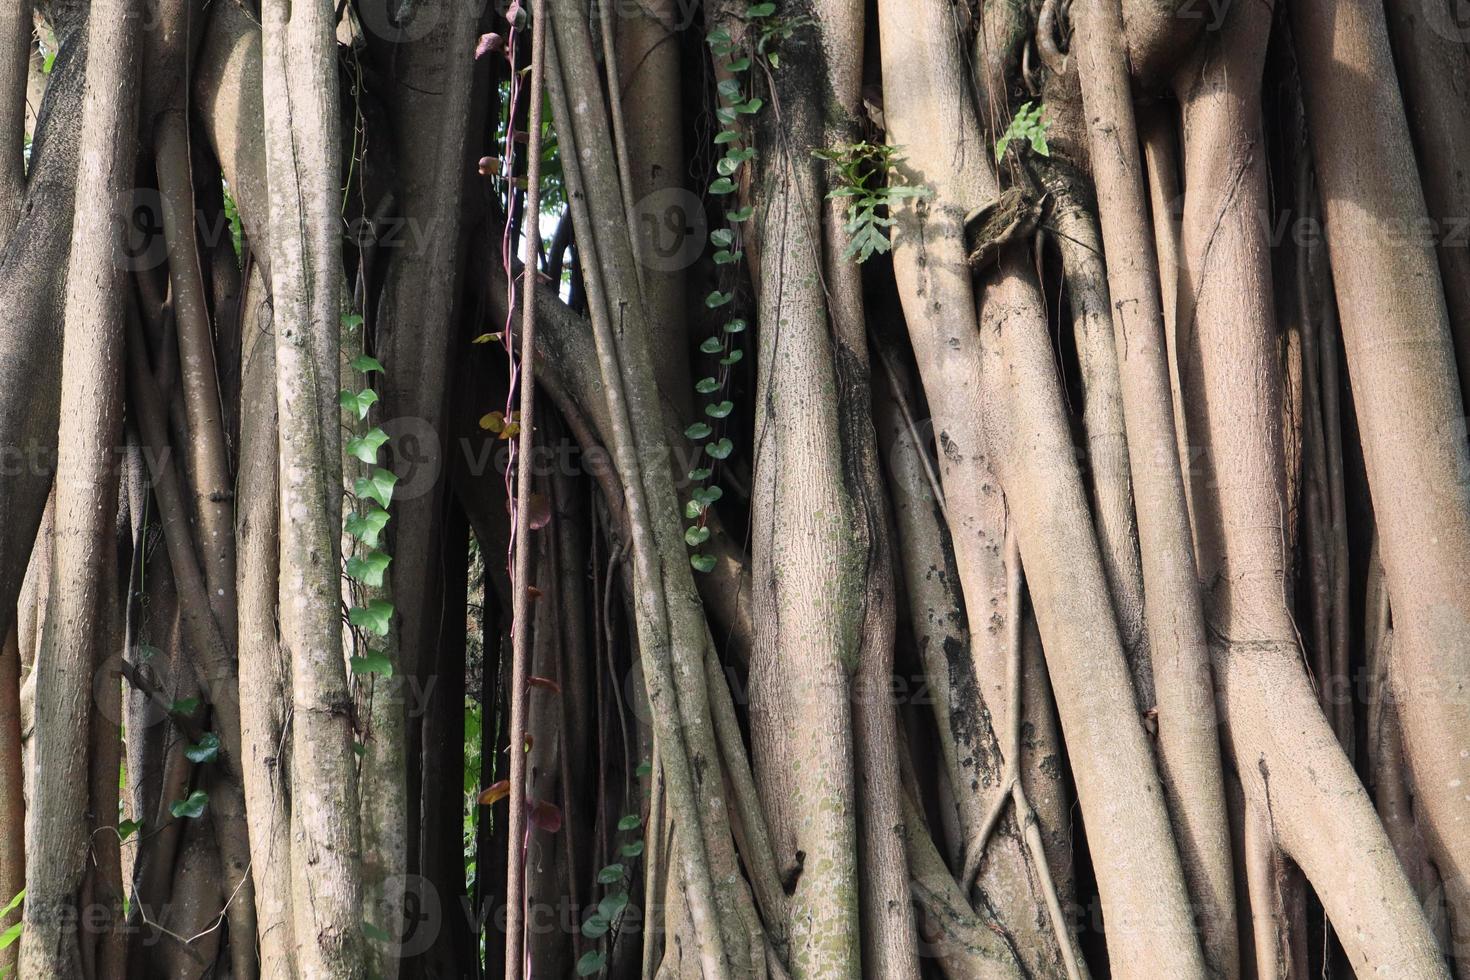 artístico banyan raiz faz muitos galhos foto